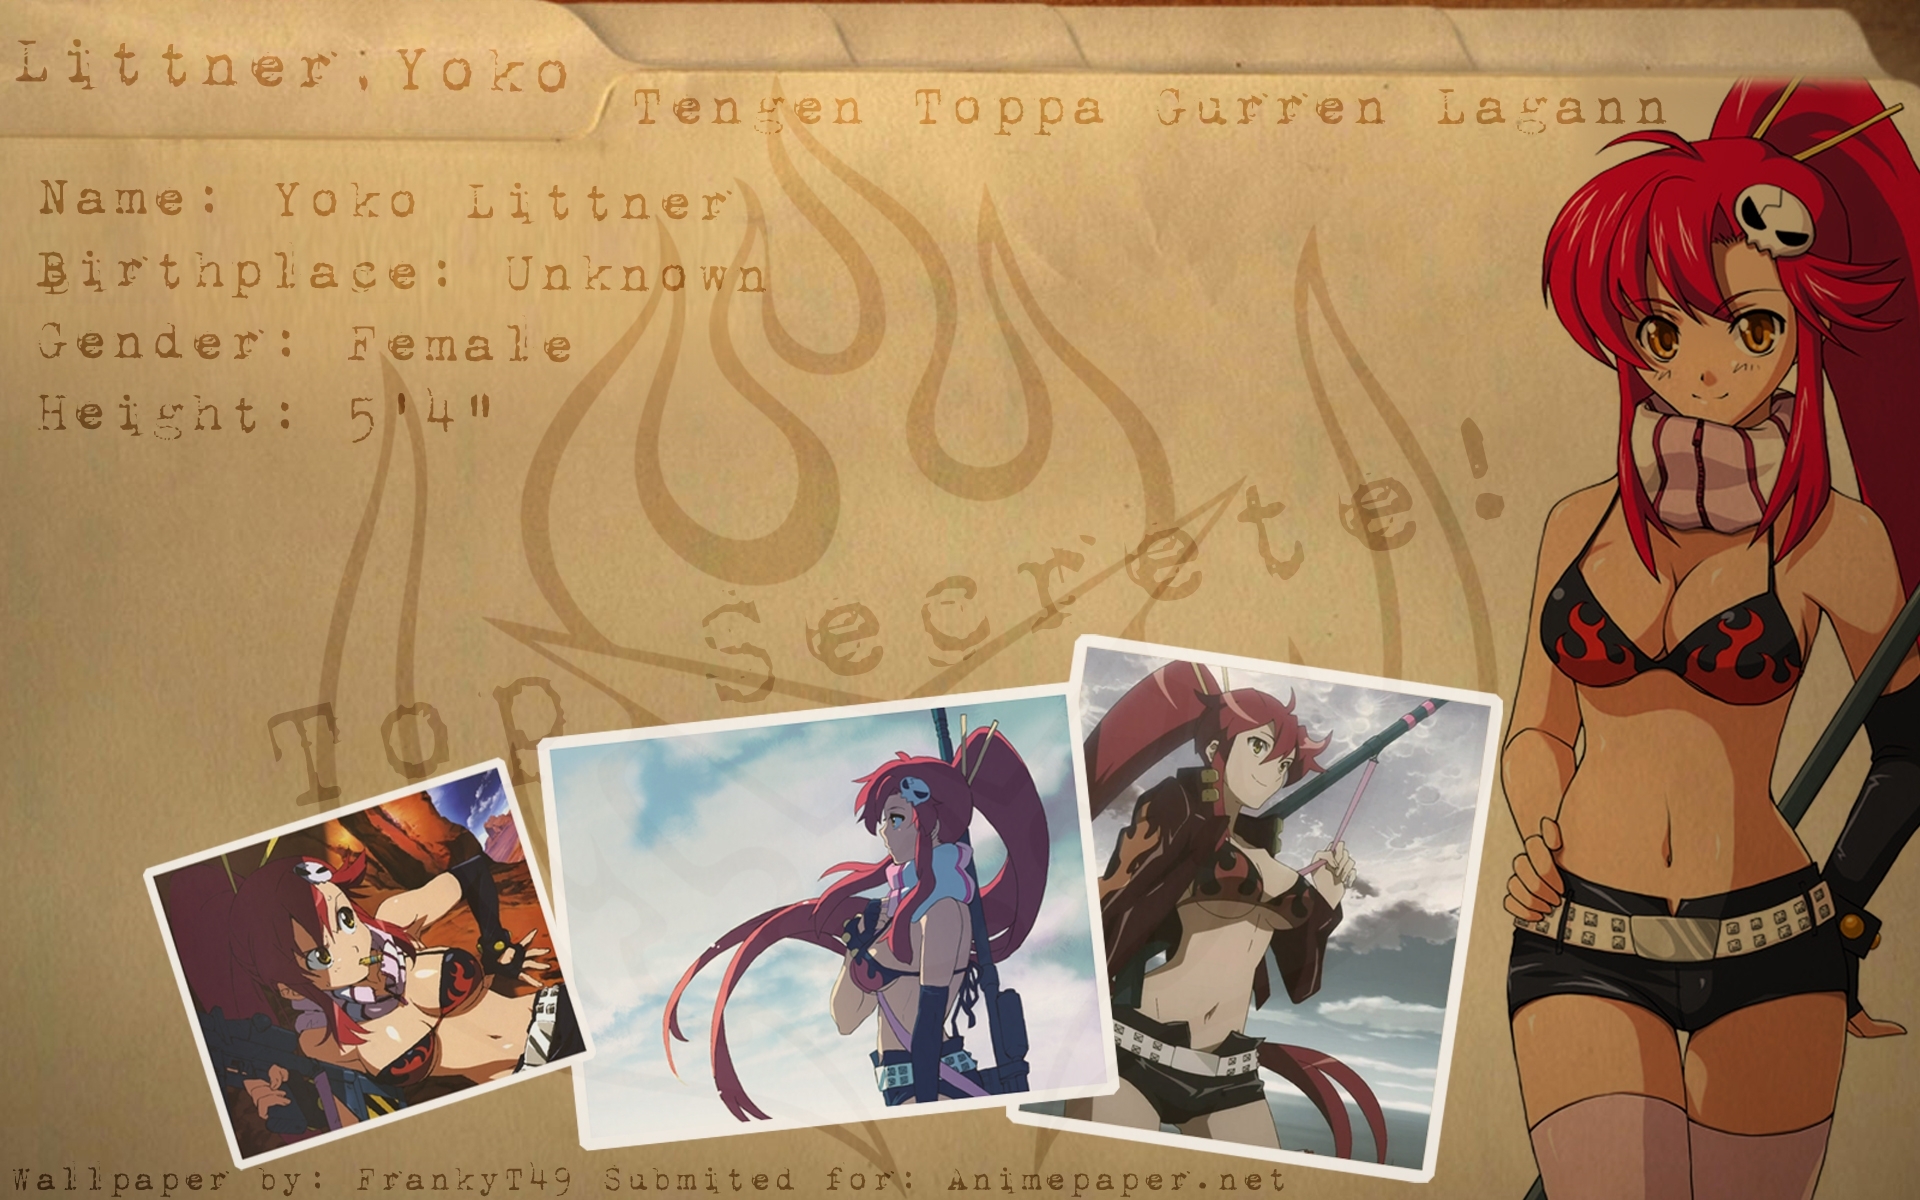 Redheads Tengen Toppa Gurren Lagann Yoko Littner Anime - Anime - HD Wallpaper 